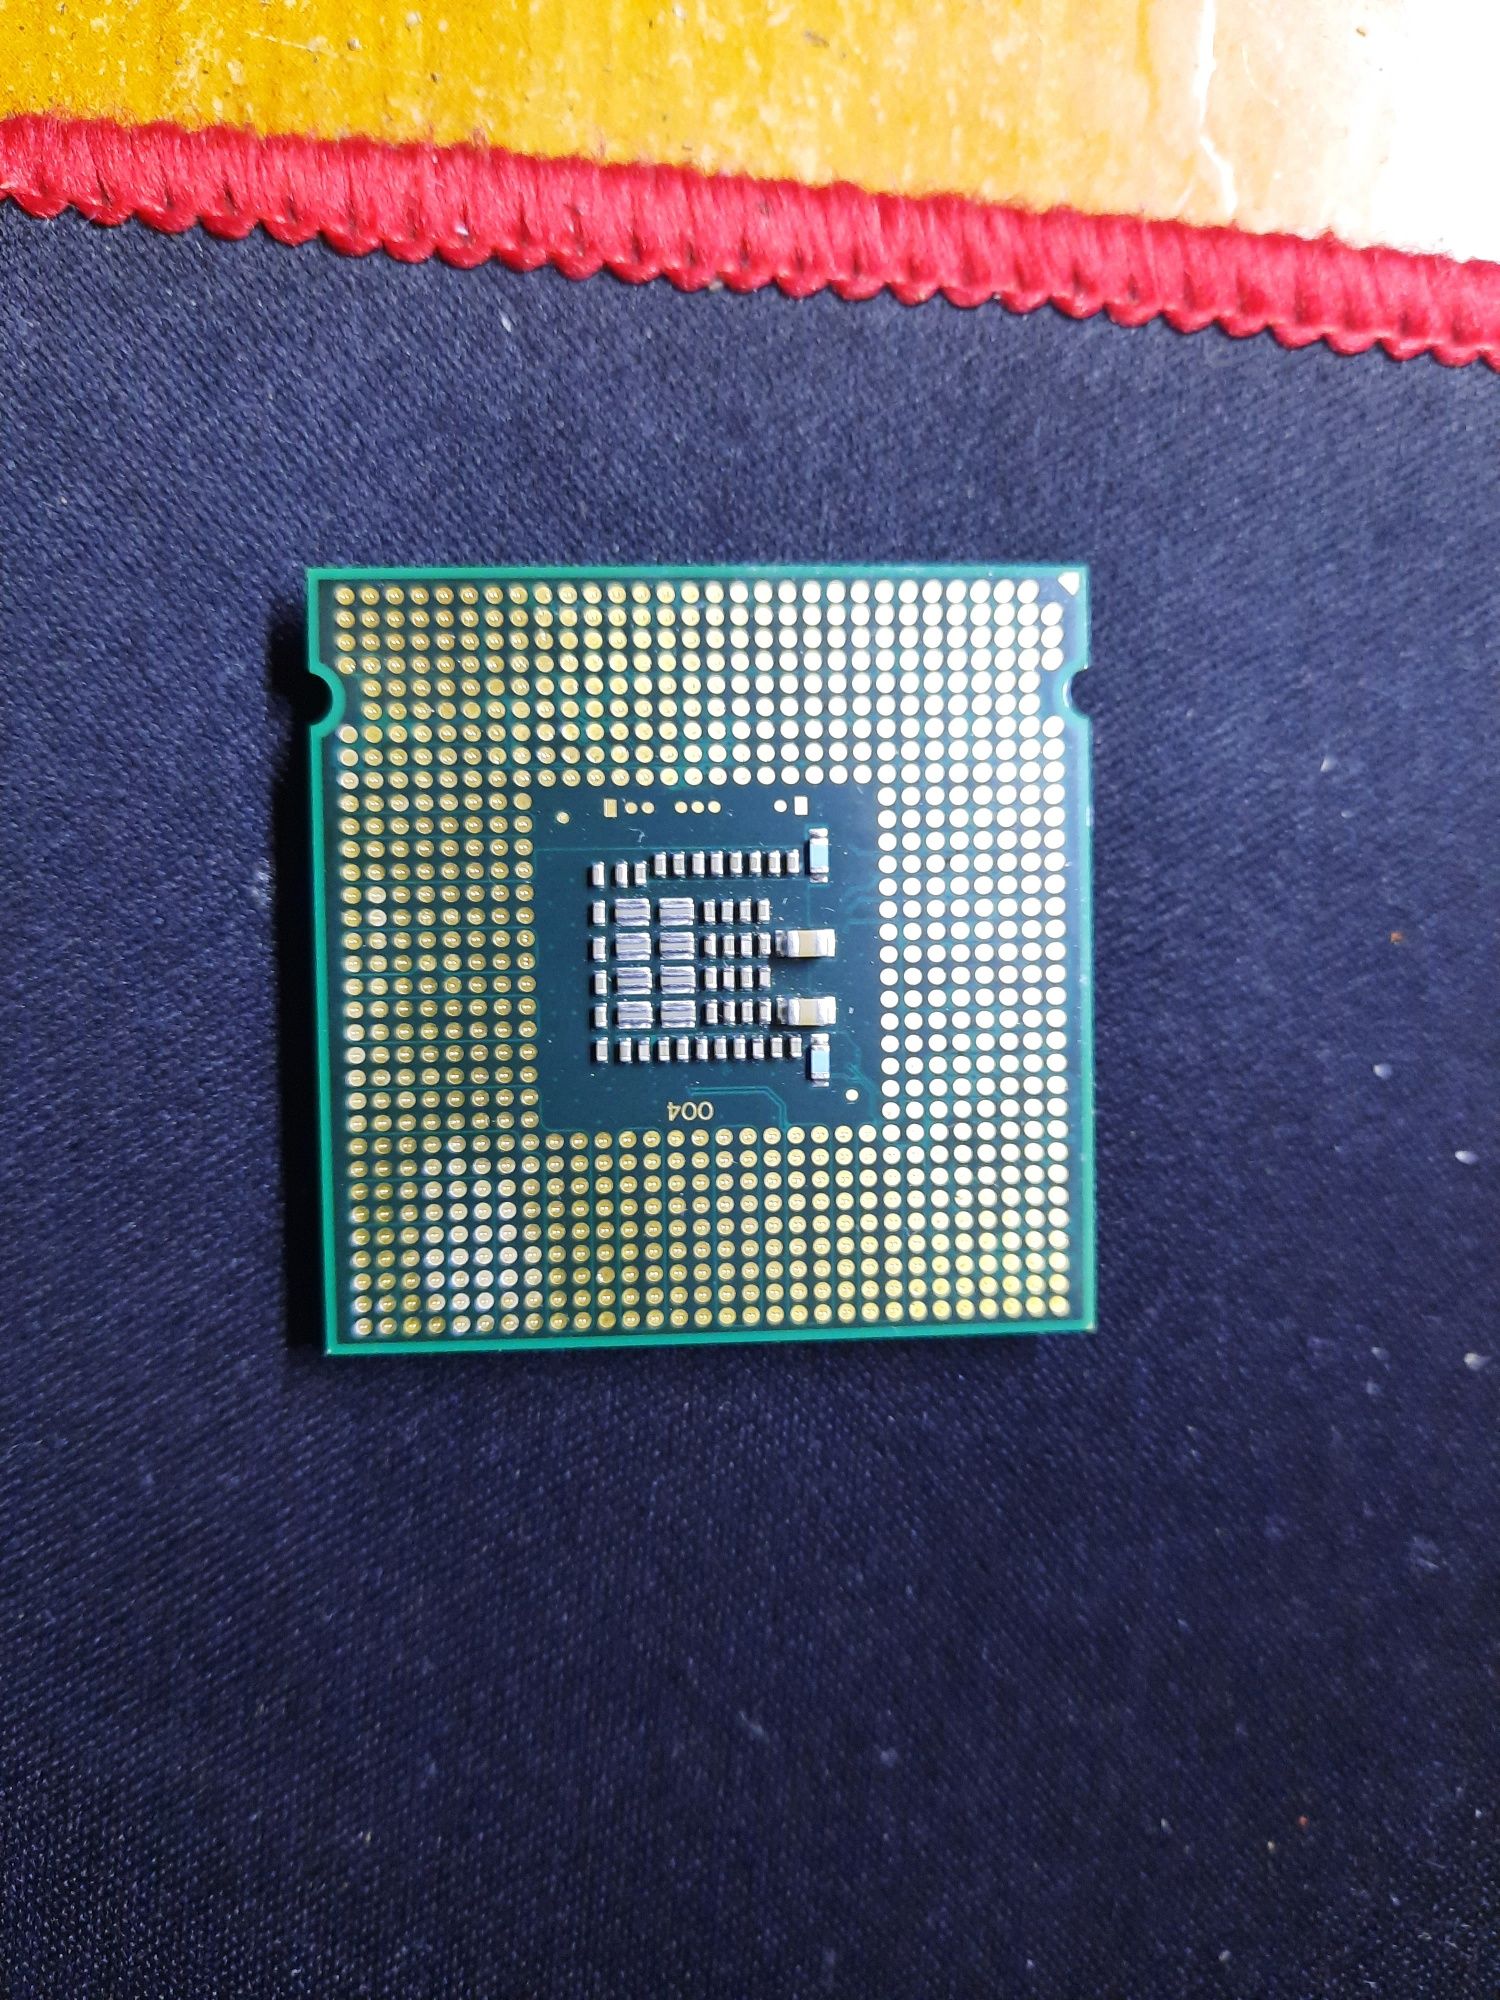 Intel pentium e5800